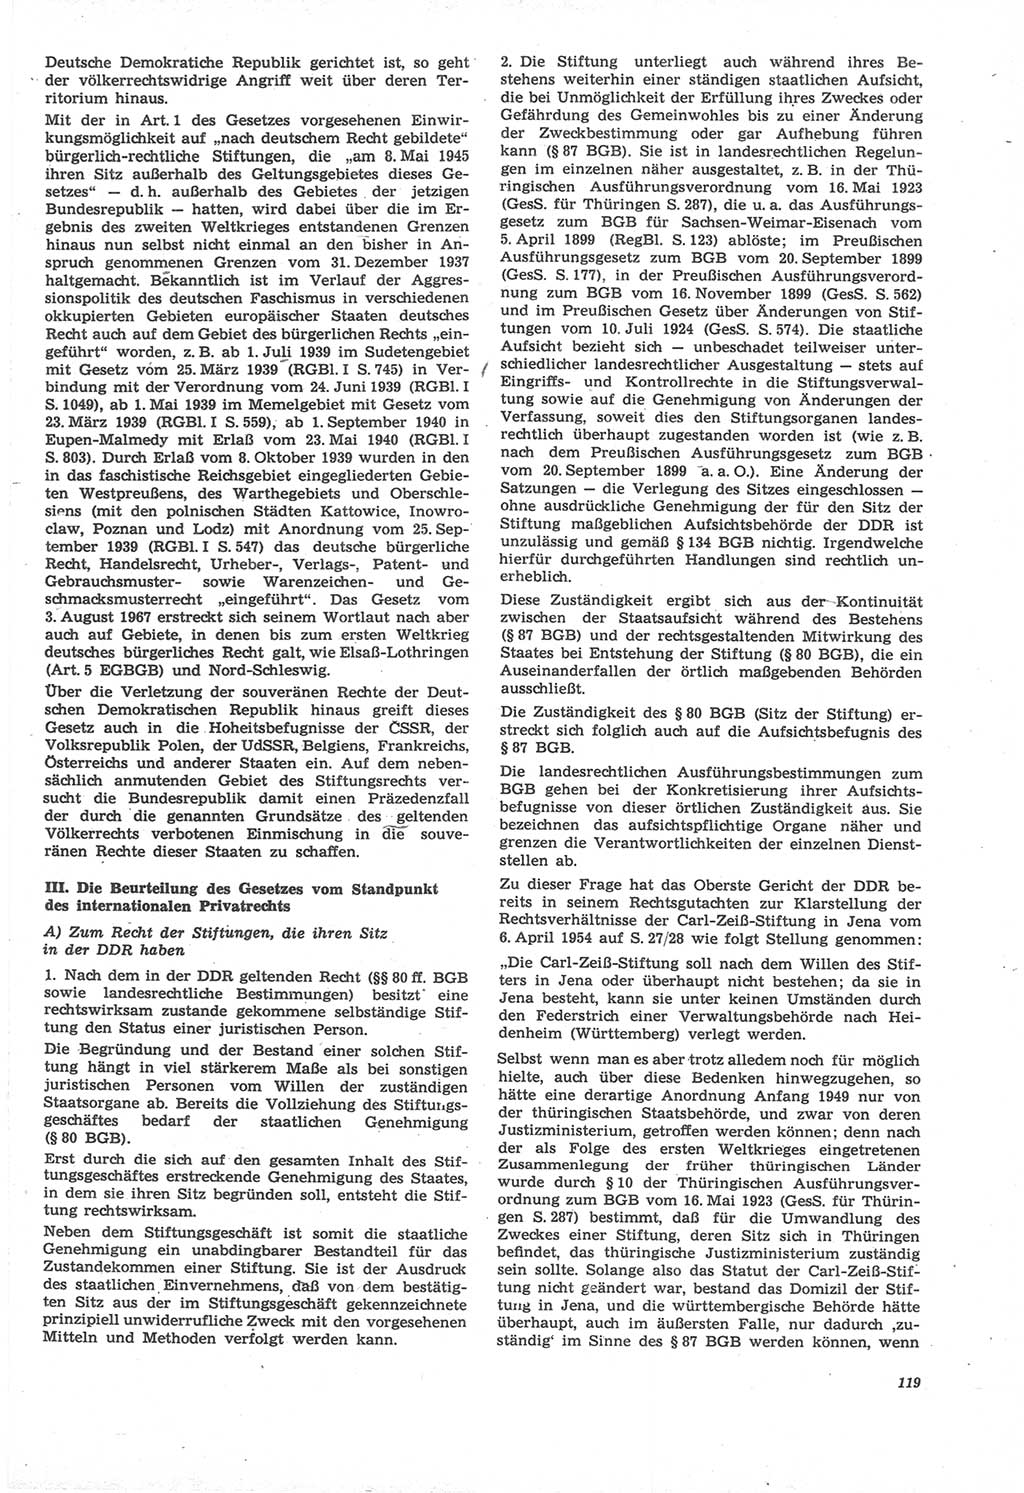 Neue Justiz (NJ), Zeitschrift für Recht und Rechtswissenschaft [Deutsche Demokratische Republik (DDR)], 22. Jahrgang 1968, Seite 119 (NJ DDR 1968, S. 119)